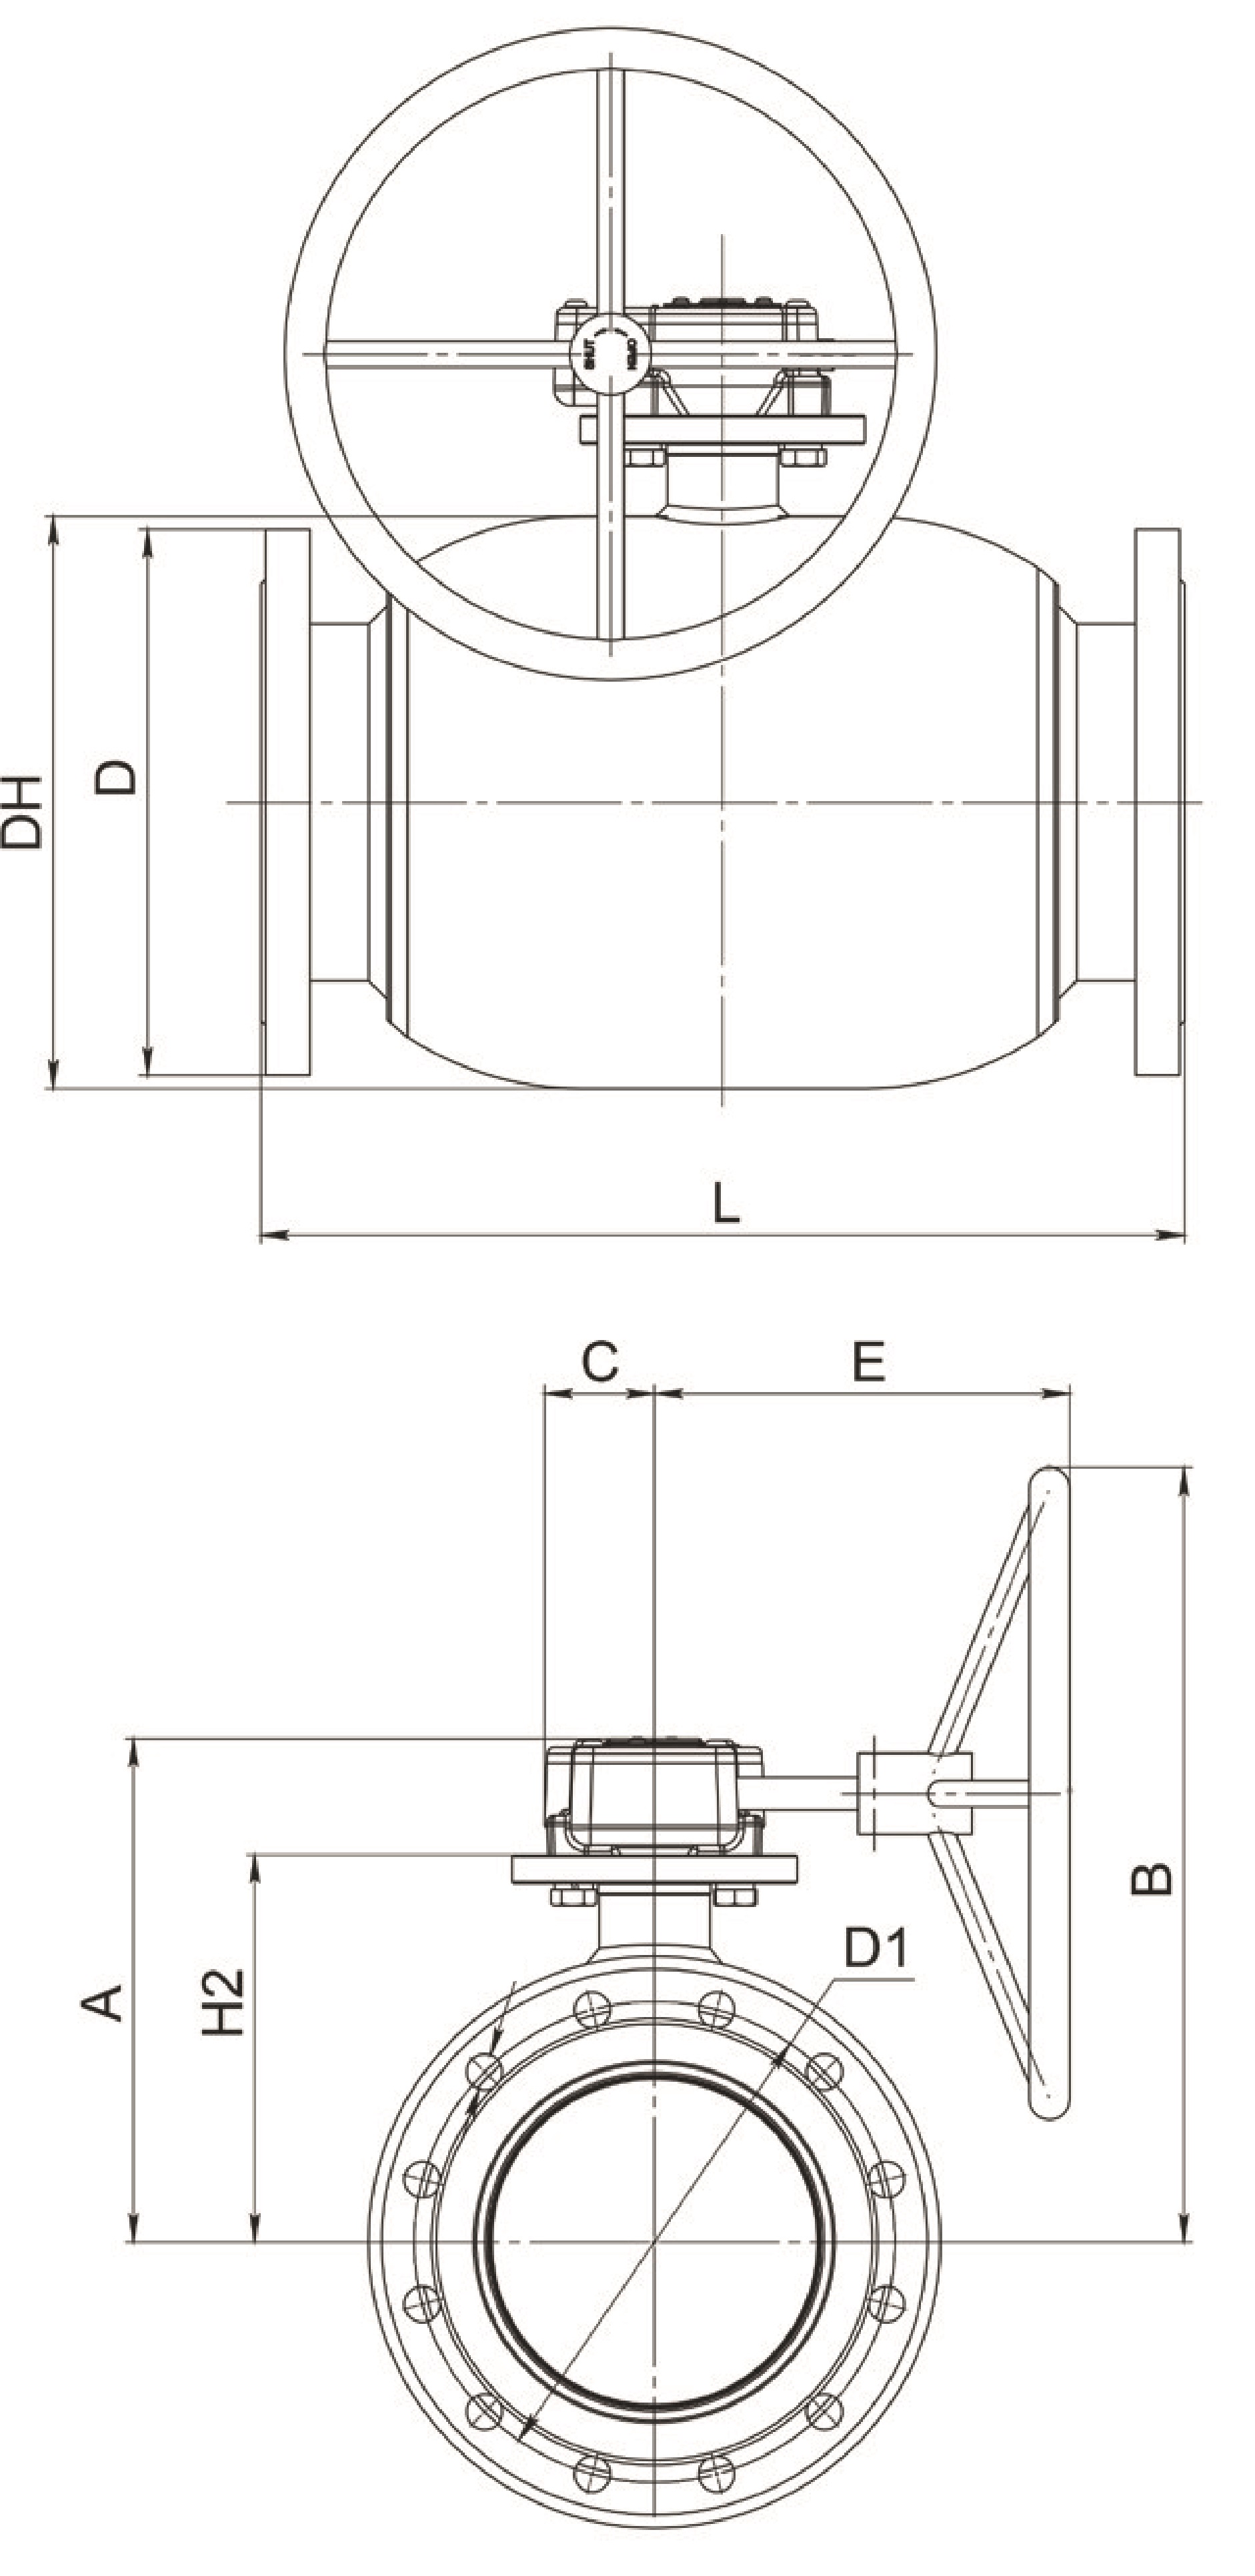 Кран шаровый Broen Ballomax-КШТ61.113.Р.25 Ду125 Ру25 полнопроходный с плавающим шаром, с ISO фланцем, корпус - сталь, уплотнение - EPDM, фланцевый, с редуктором